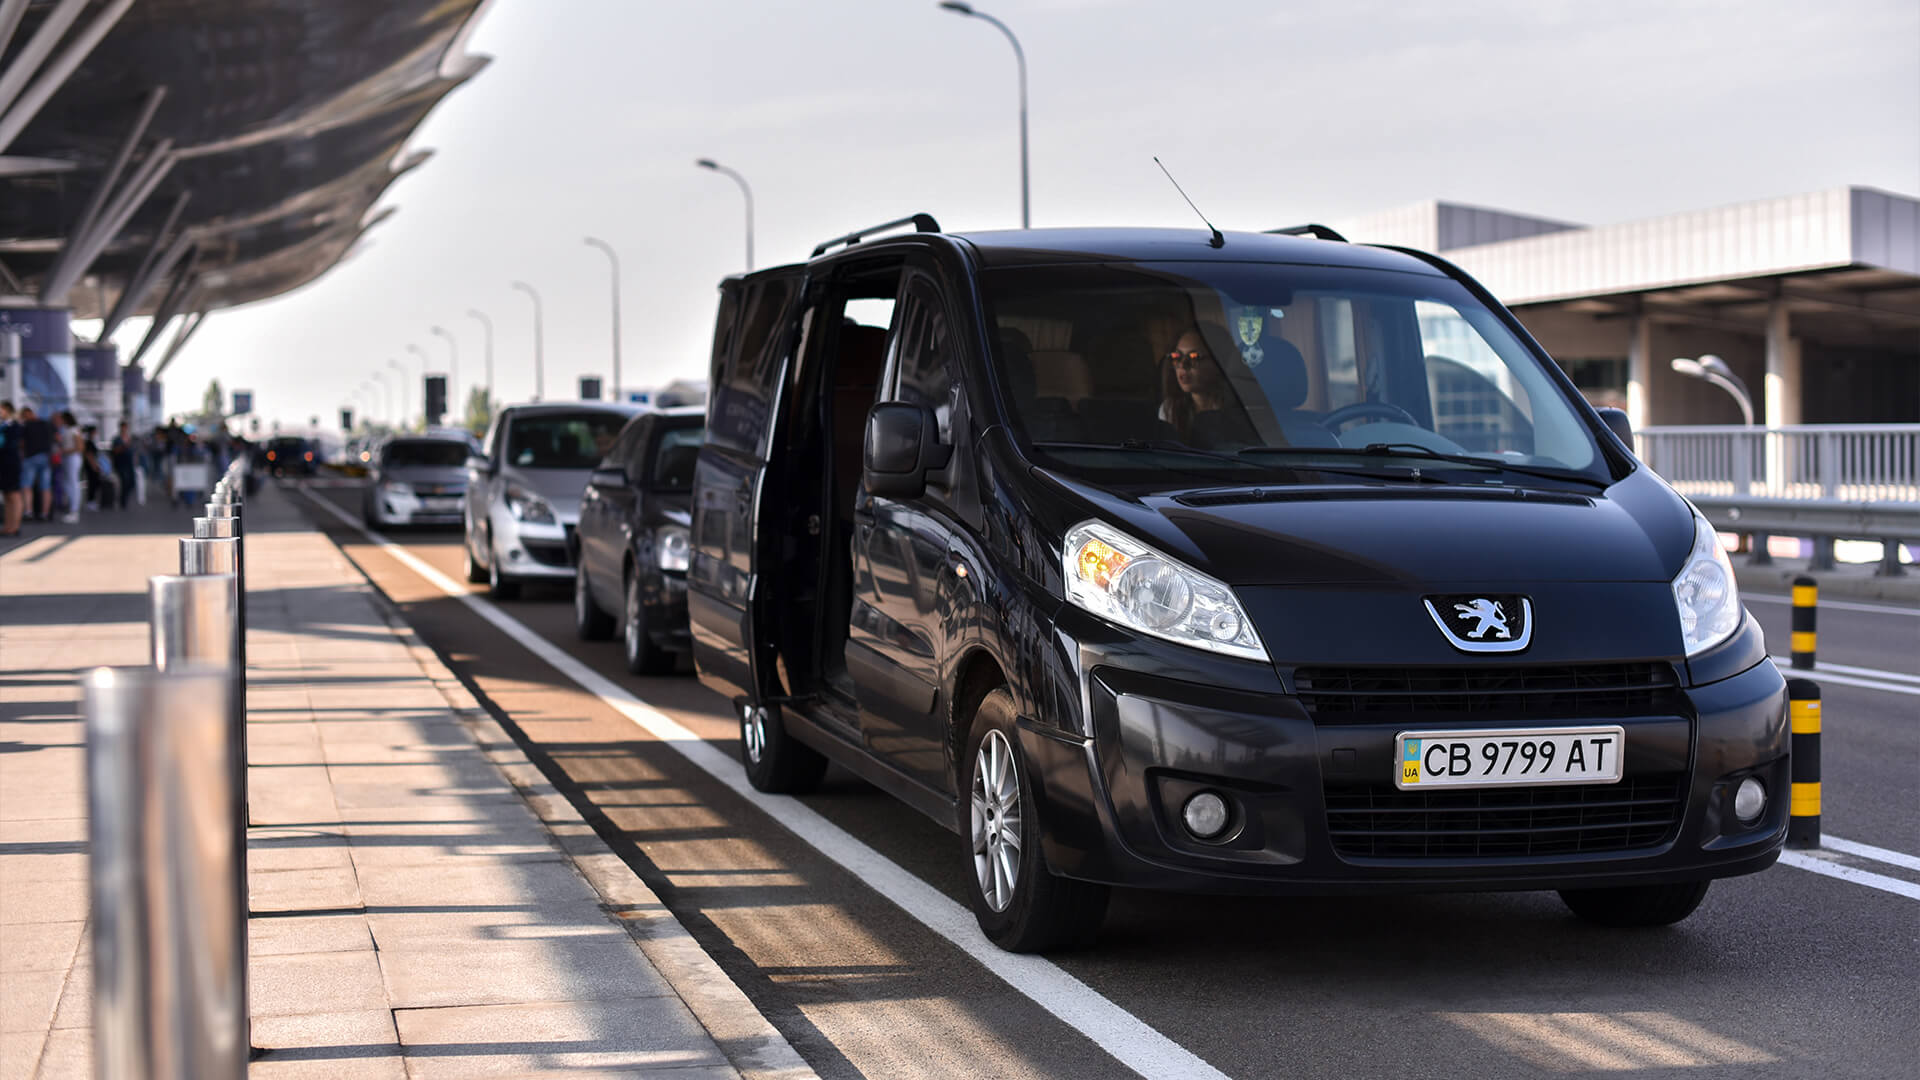 hanse business travel transfer und limousinenservice flughafentransfer schwarzer kleinbus wartet am flughafen auf passagiere